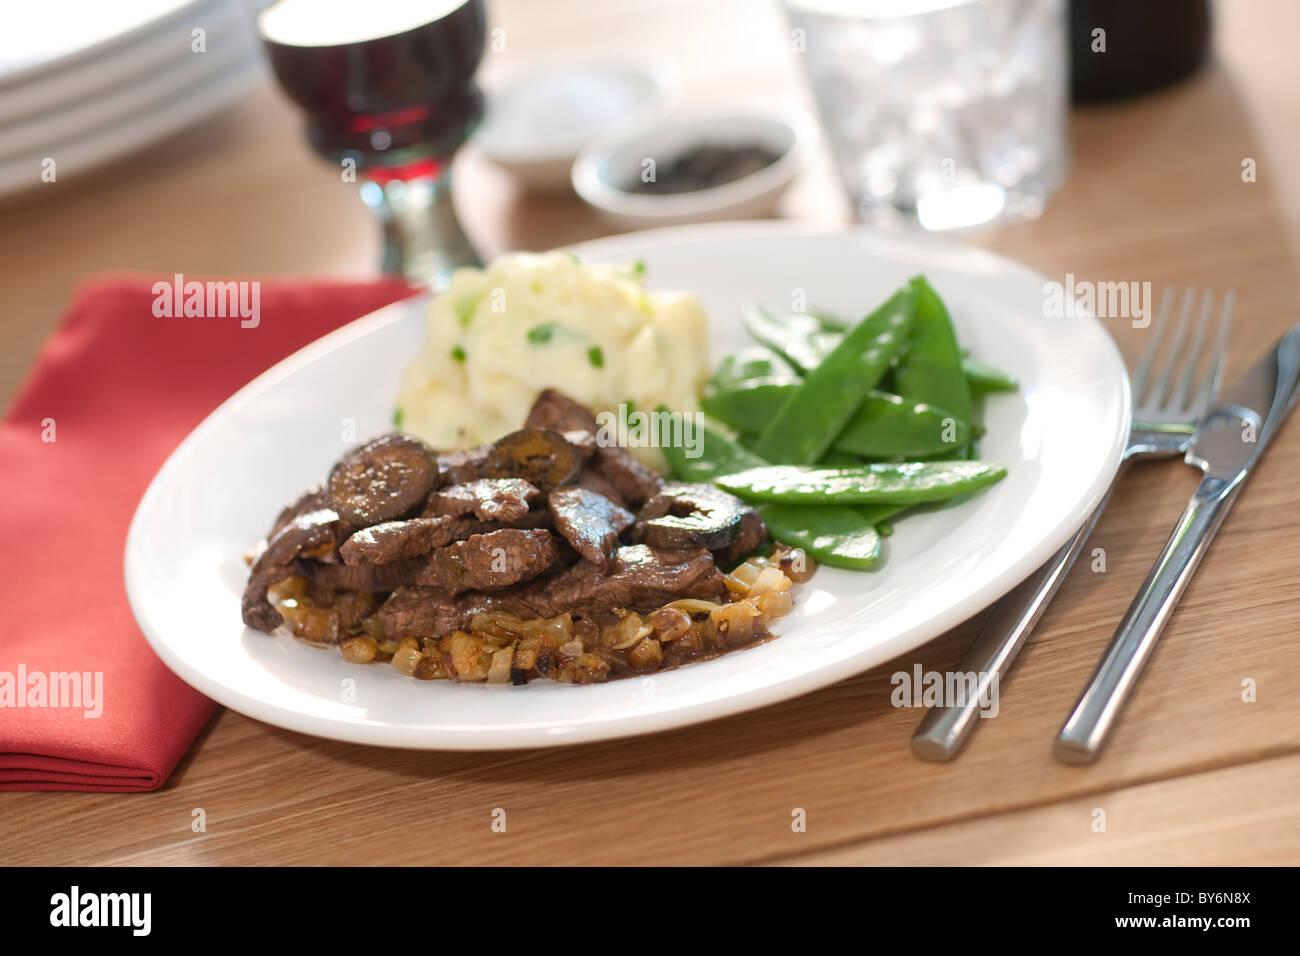 Eine Mahlzeit aus Rindfleisch übergiessen. Stockfoto